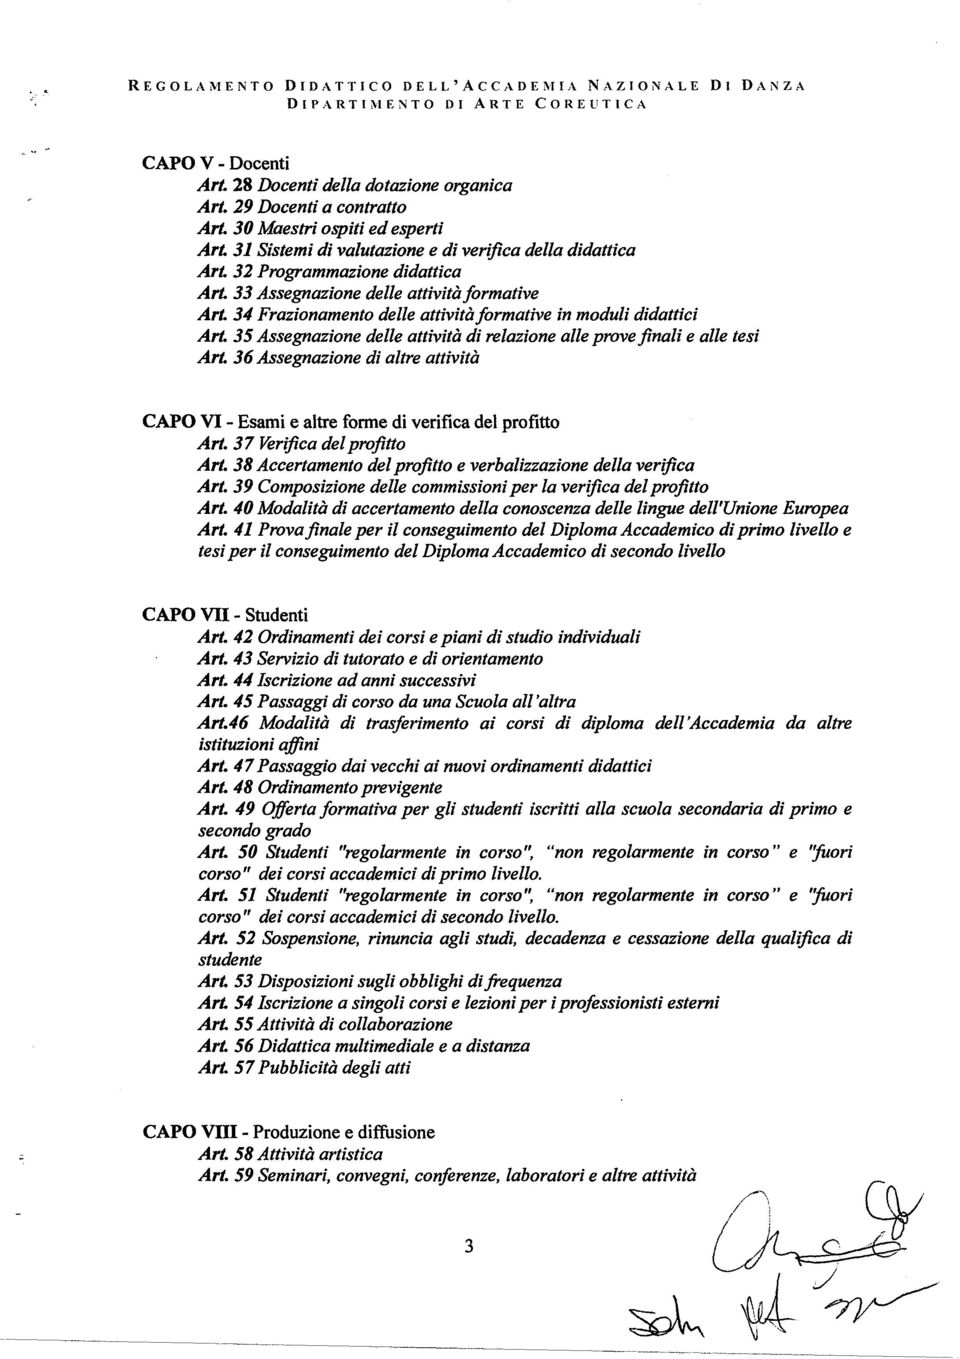 34 Frazionamento delle attività formative in moduli didattici Art. 35 Assegnazione delle attività di relazione alle prove finali e alle tesi Art.